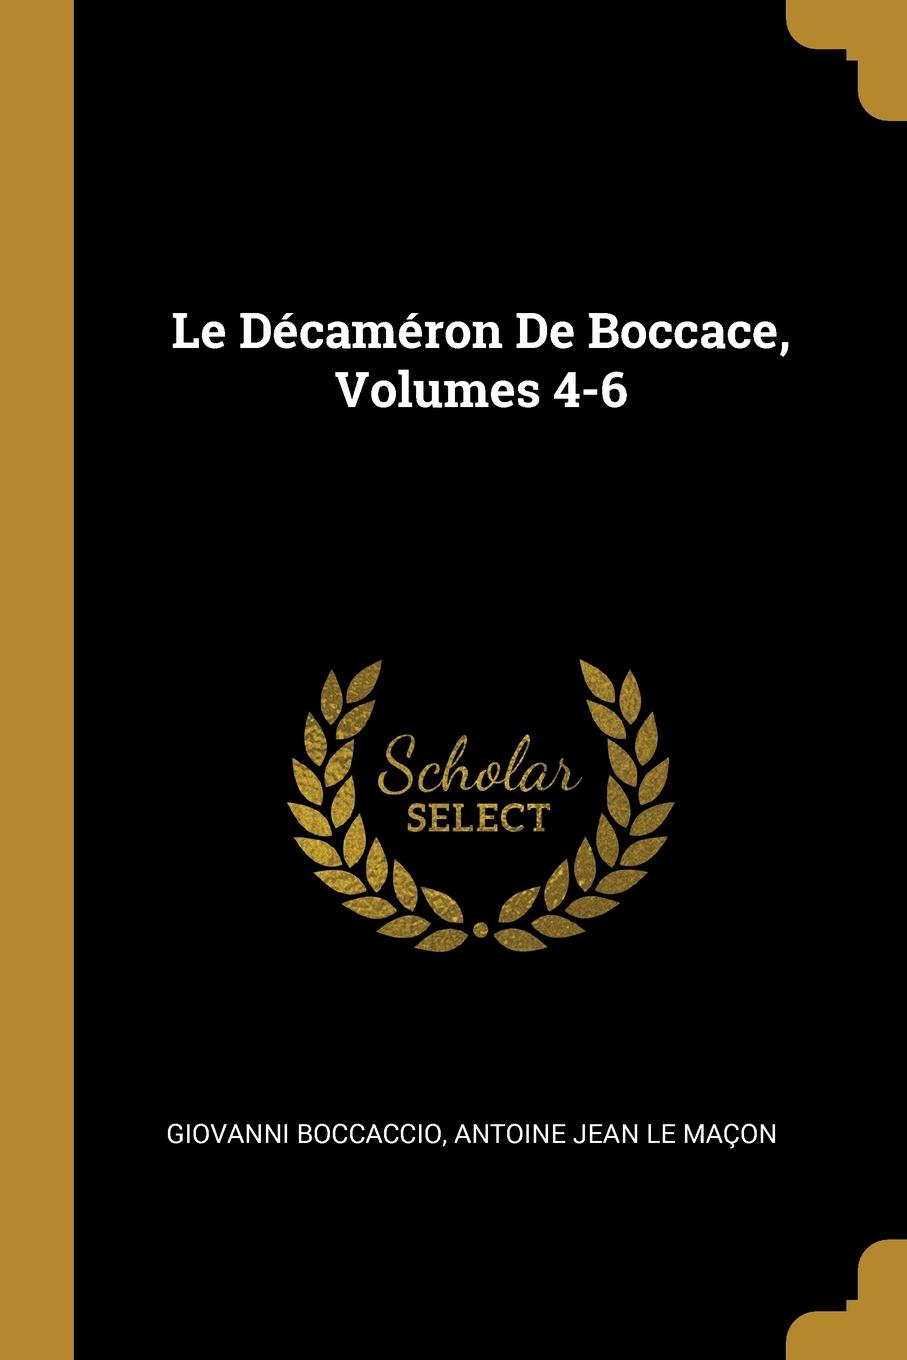 Le Decameron De Boccace, Volumes 4-6